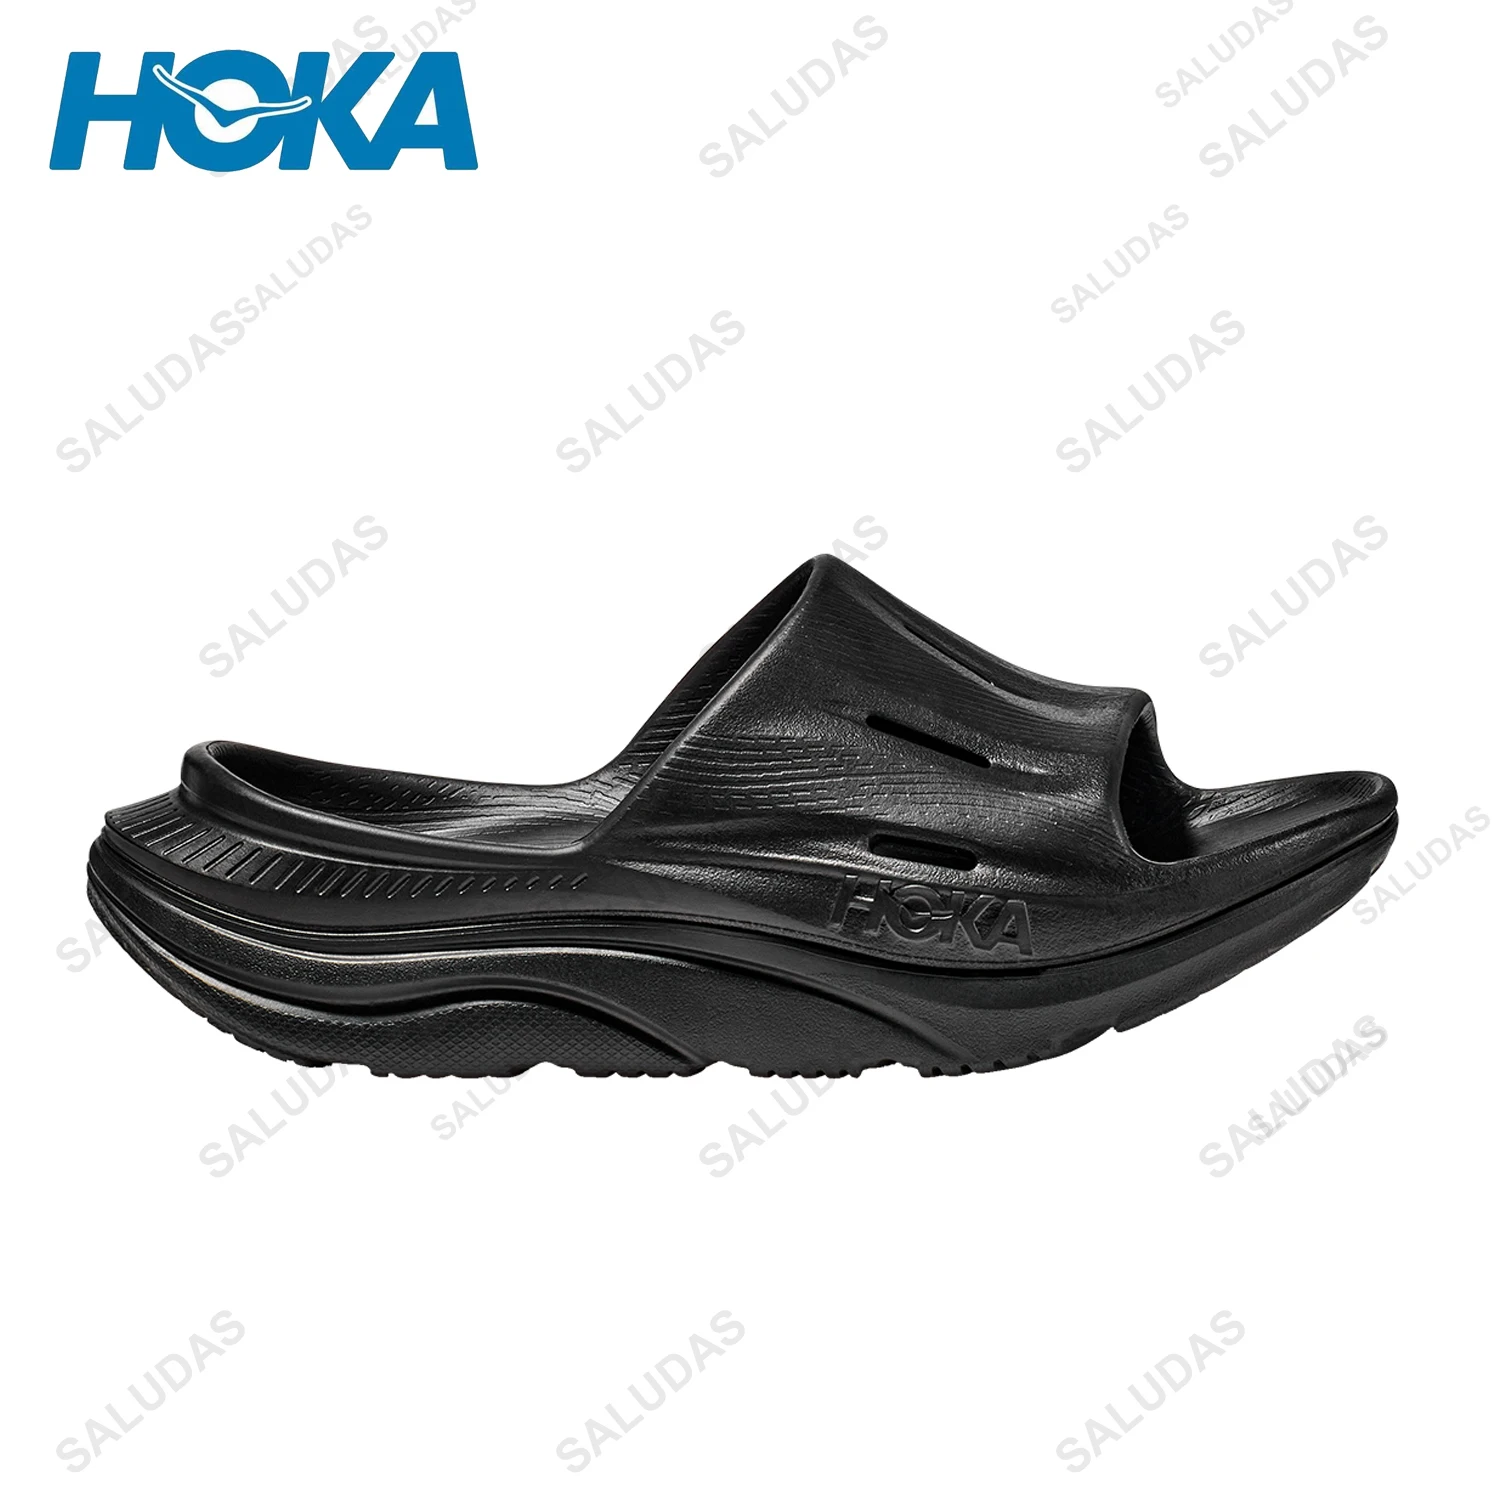 

HOKA Slippers for Men Ora Recovery Slide 3 Summer Men's Sandals Ultra Light Comfortable Flip Flops Soft Sole Beach Slippers Men